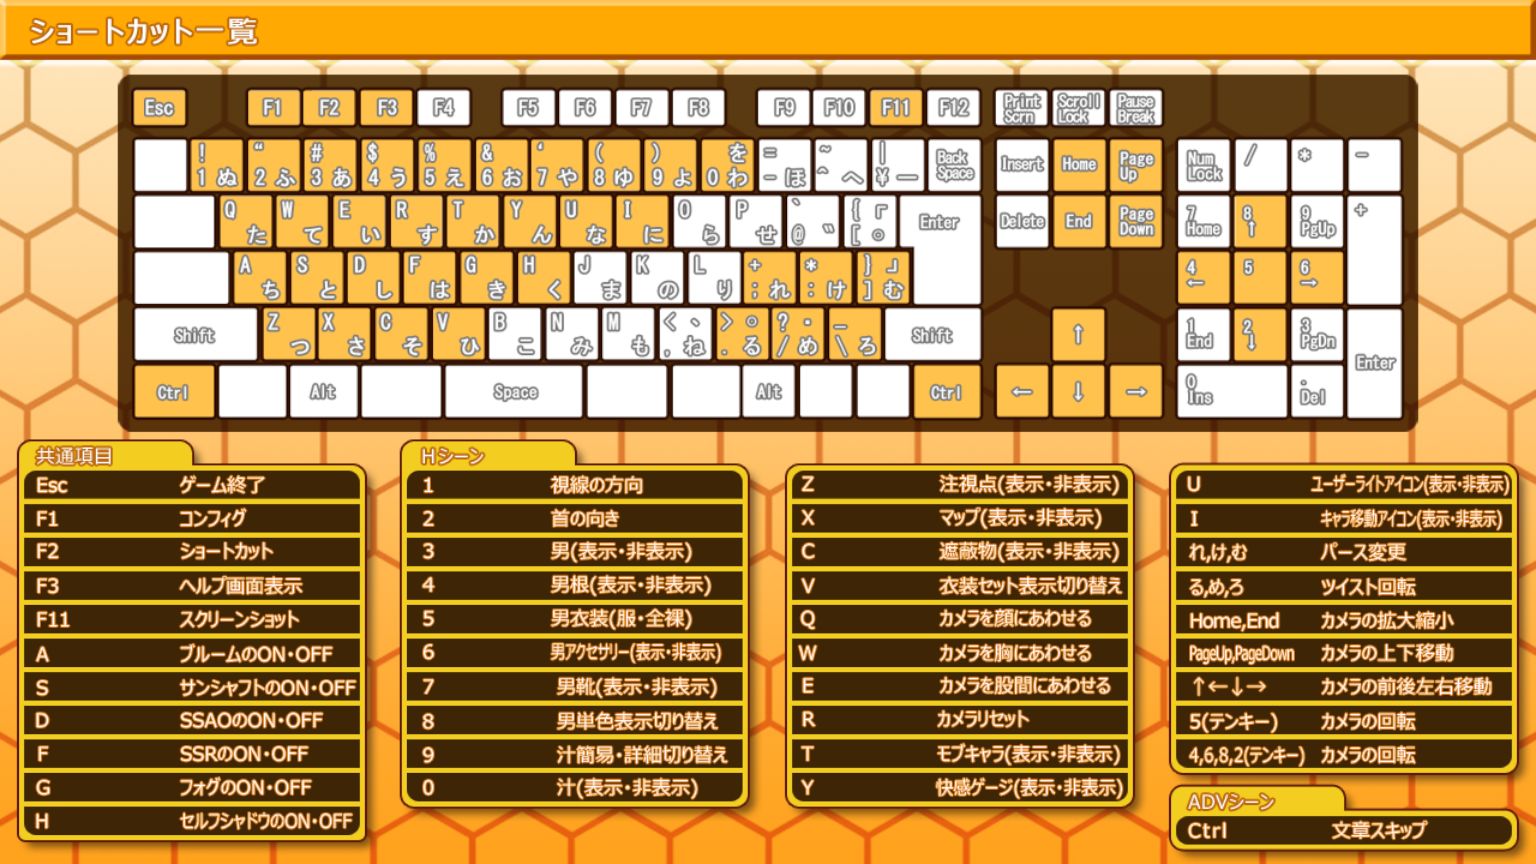 某日本游戏使用了大部分键盘不存在的「ろ」键和位置并不一定在那里的 0x32 键